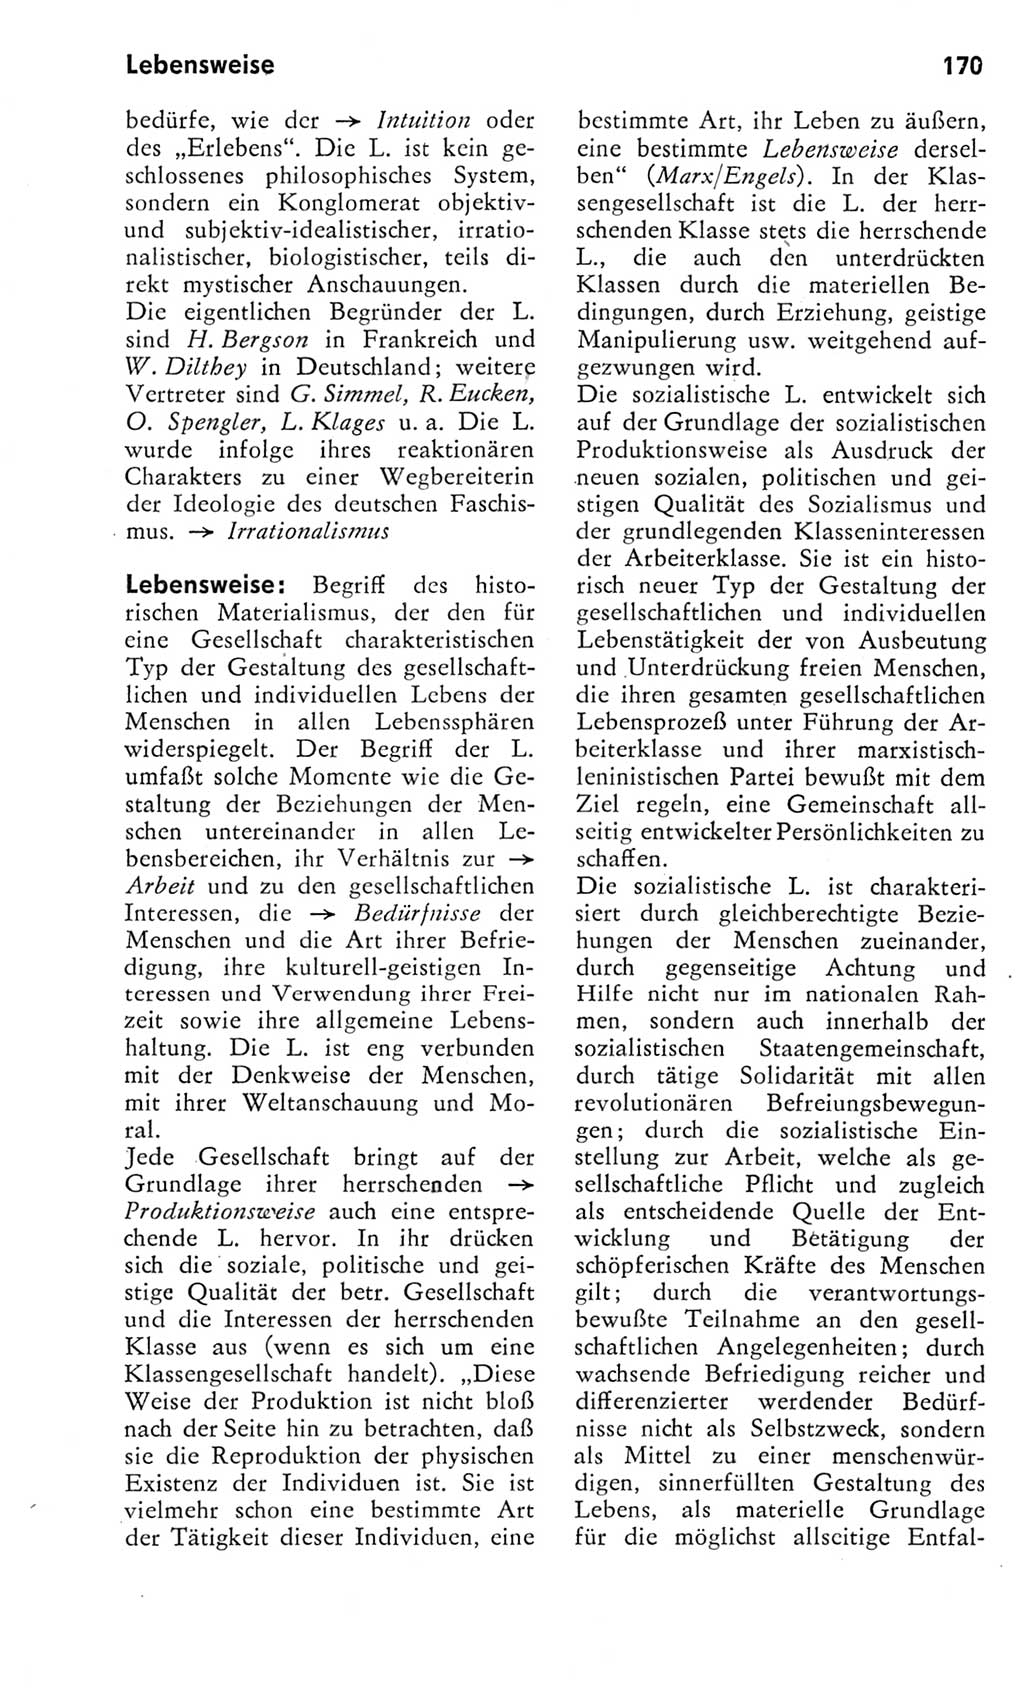 Kleines Wörterbuch der marxistisch-leninistischen Philosophie [Deutsche Demokratische Republik (DDR)] 1975, Seite 170 (Kl. Wb. ML Phil. DDR 1975, S. 170)